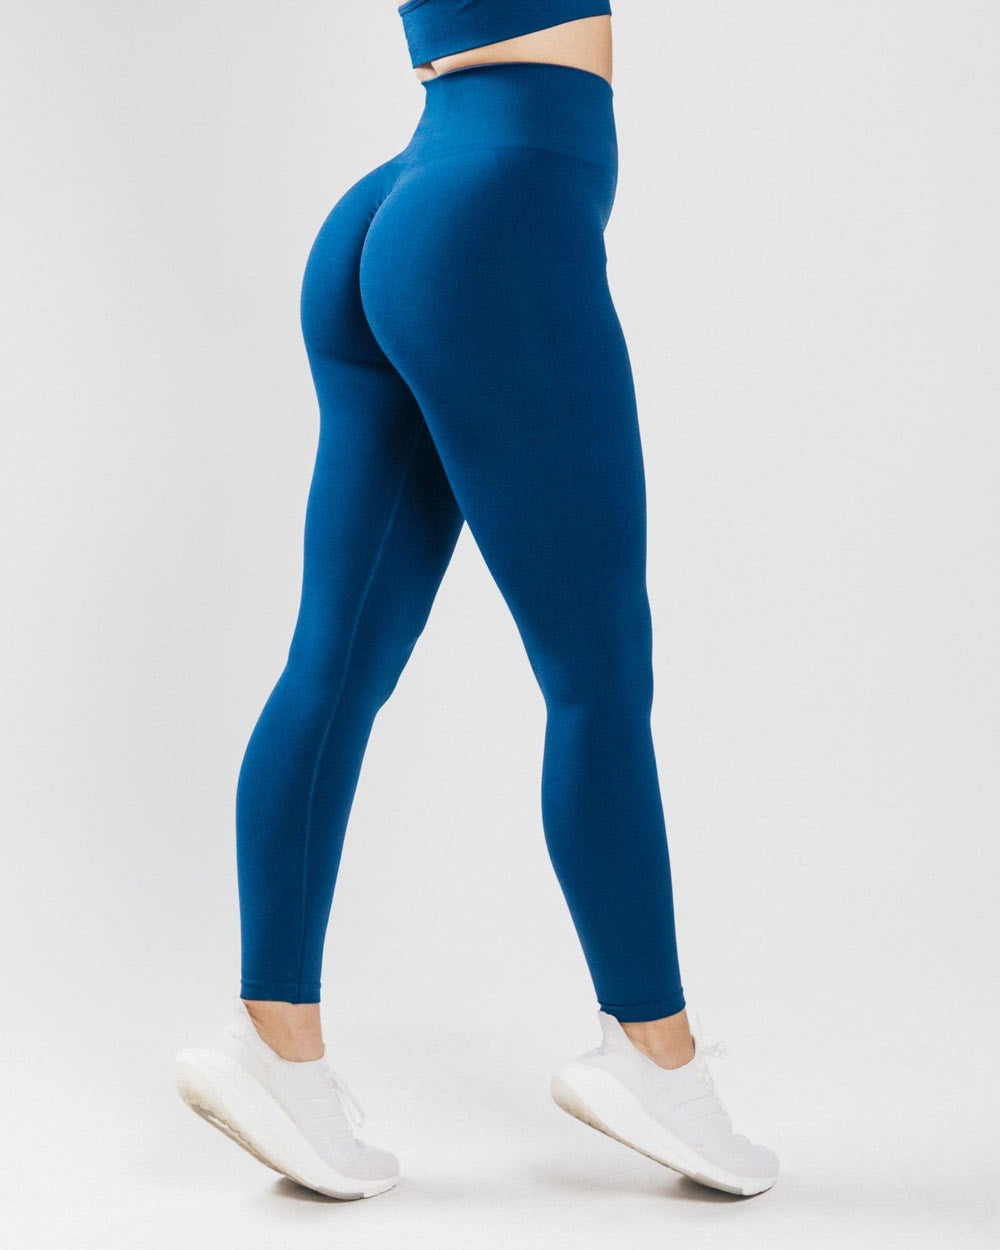 Ruffle Yoga Pants Activewear Truetights Deep Blue S 